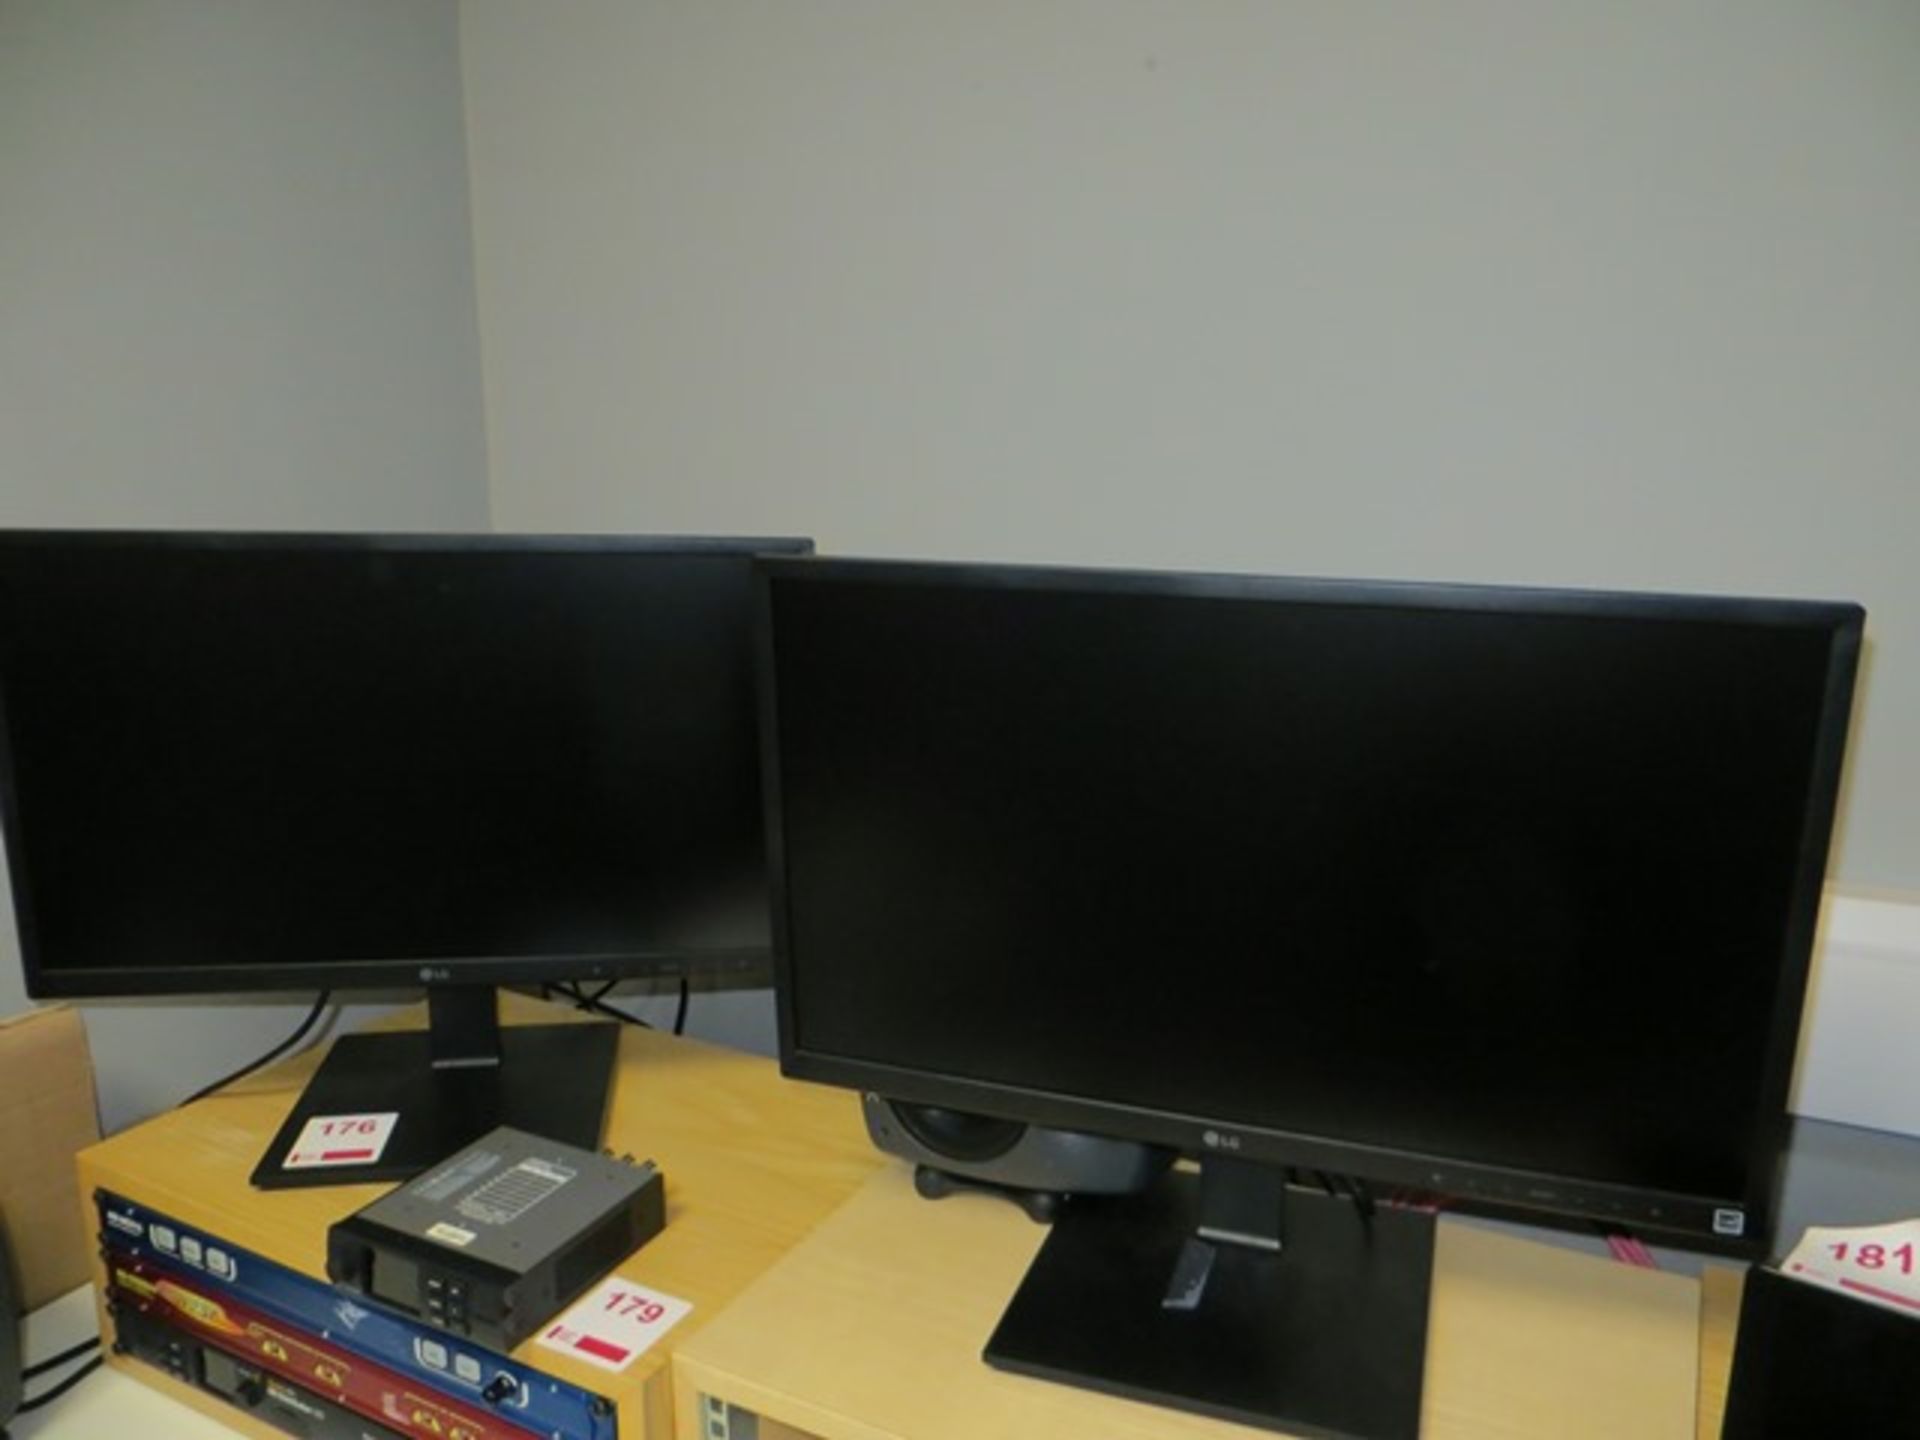 Two LG 24BK550Y-B 24" colour monitors